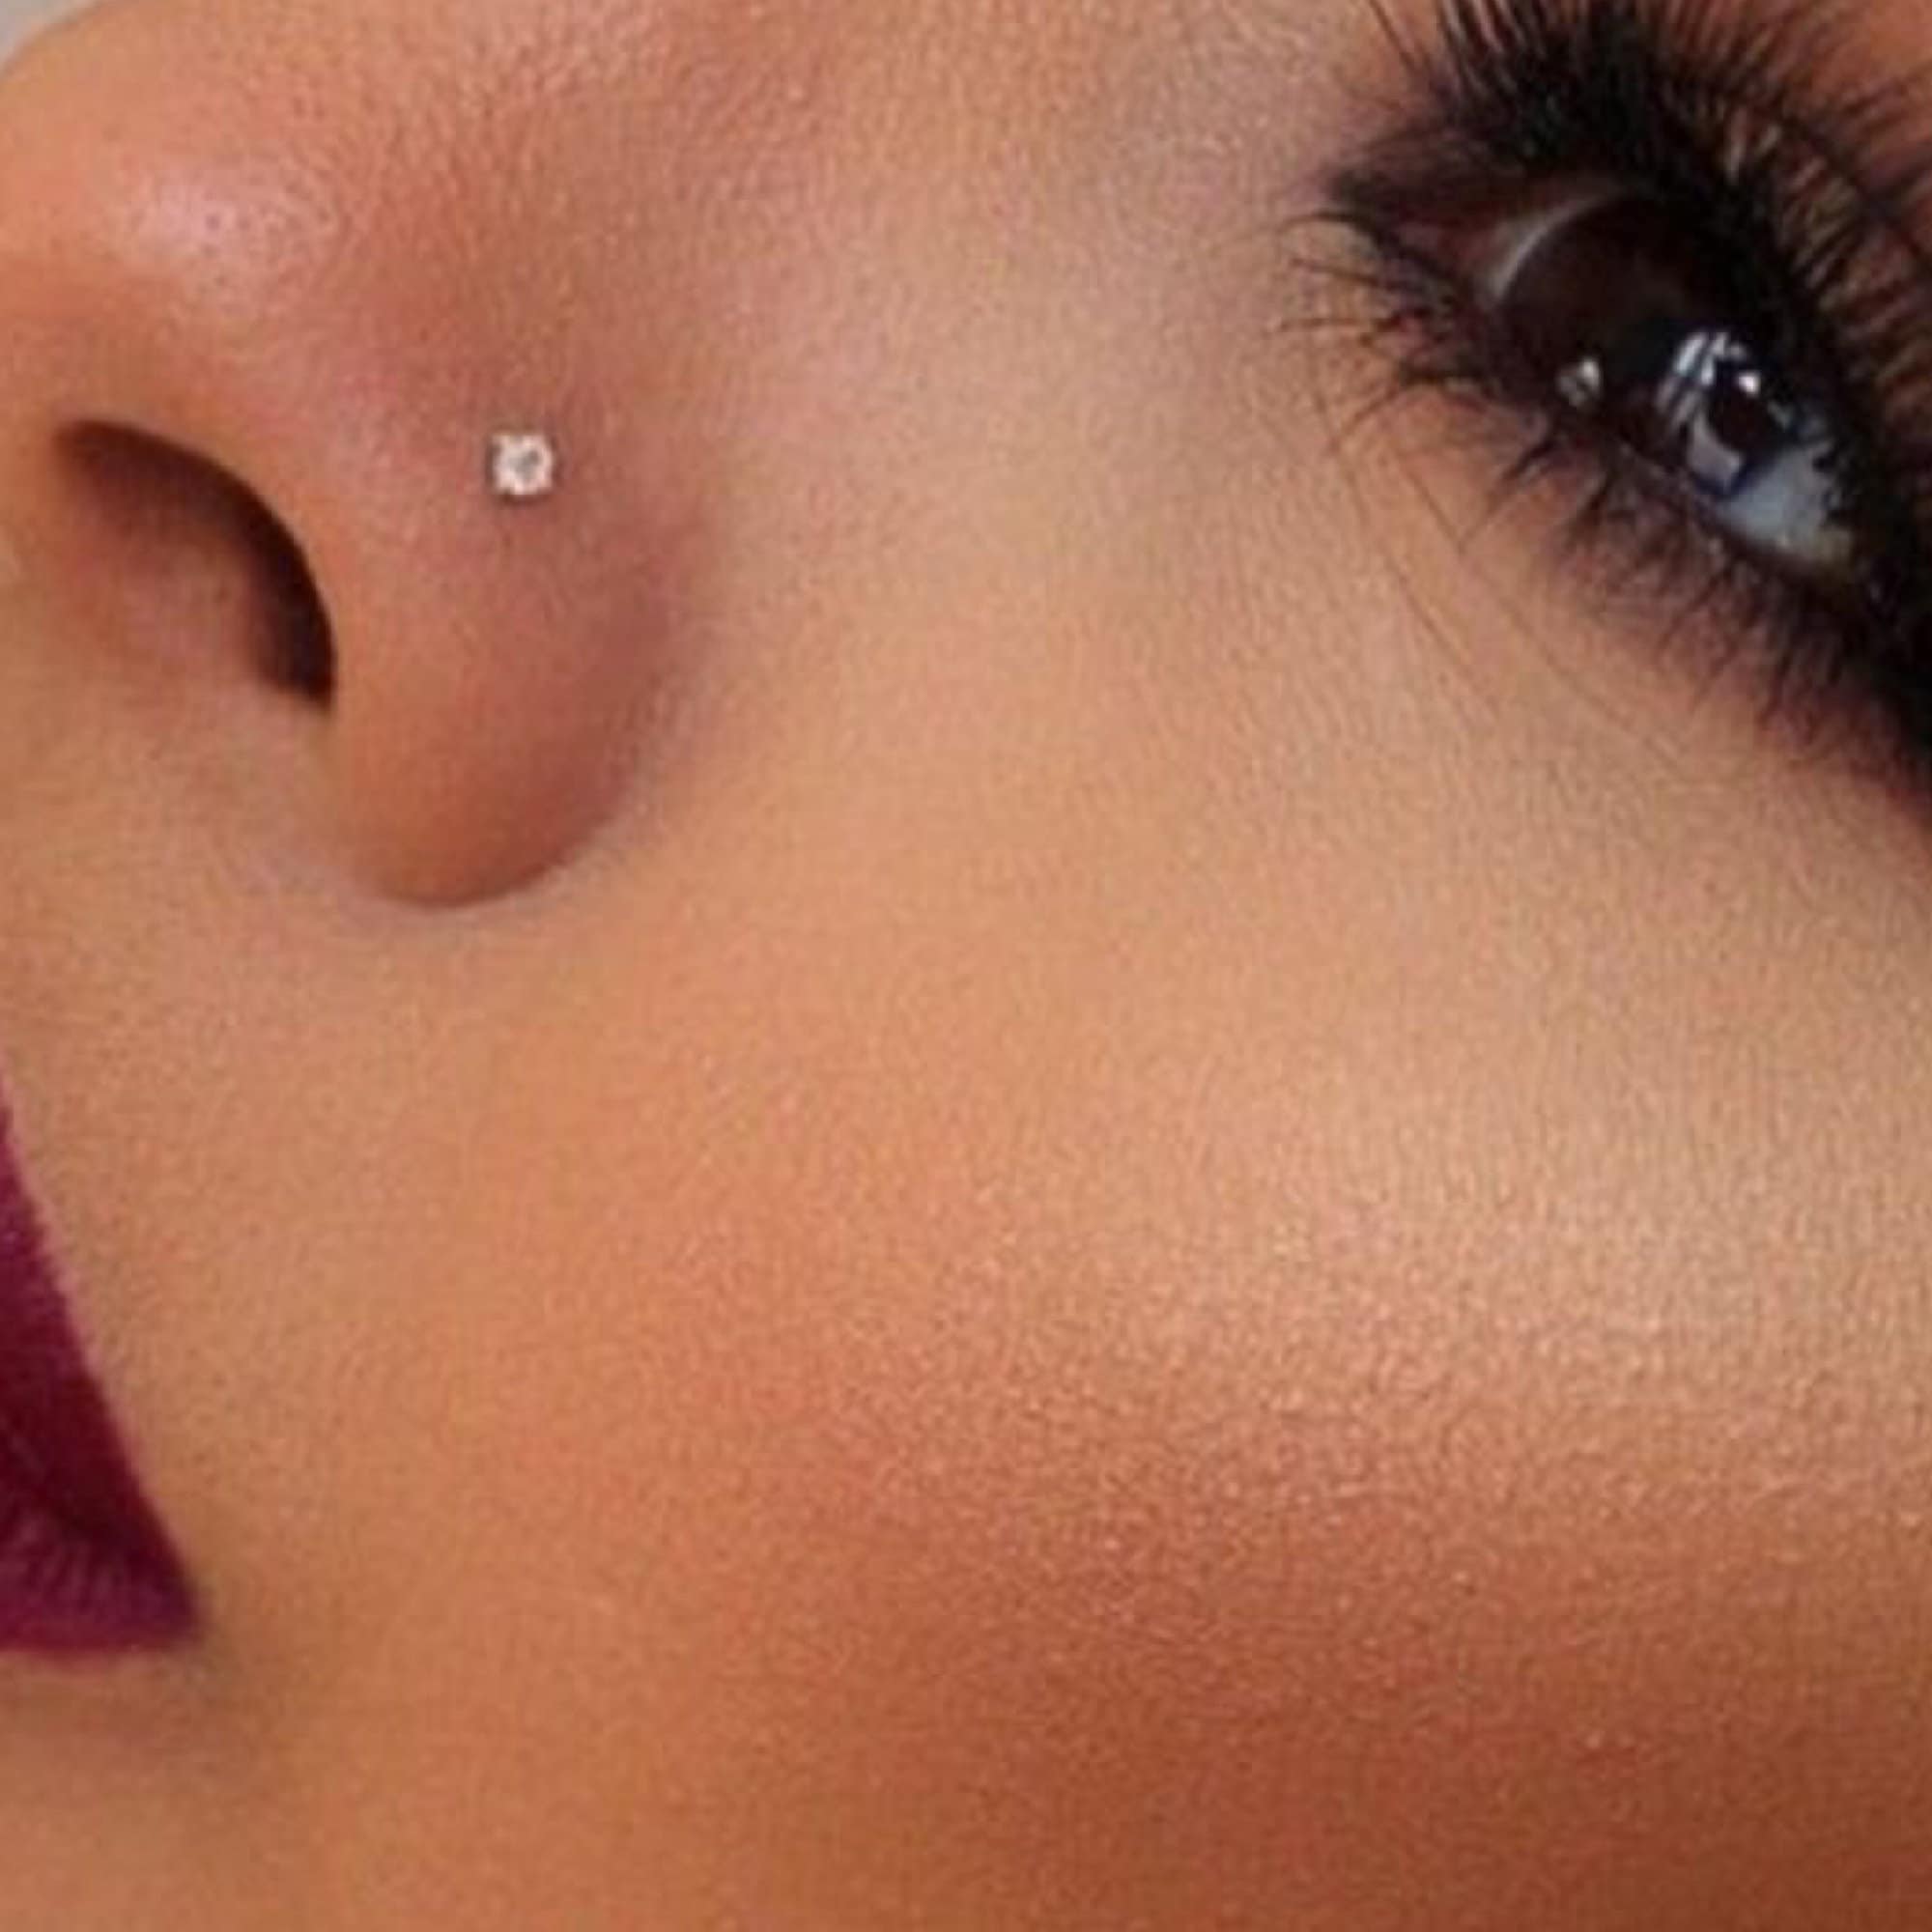 6Pcs African Nose Cuff Non Piercing Fake Nose Ring for Women Fake Piercings  04 | eBay